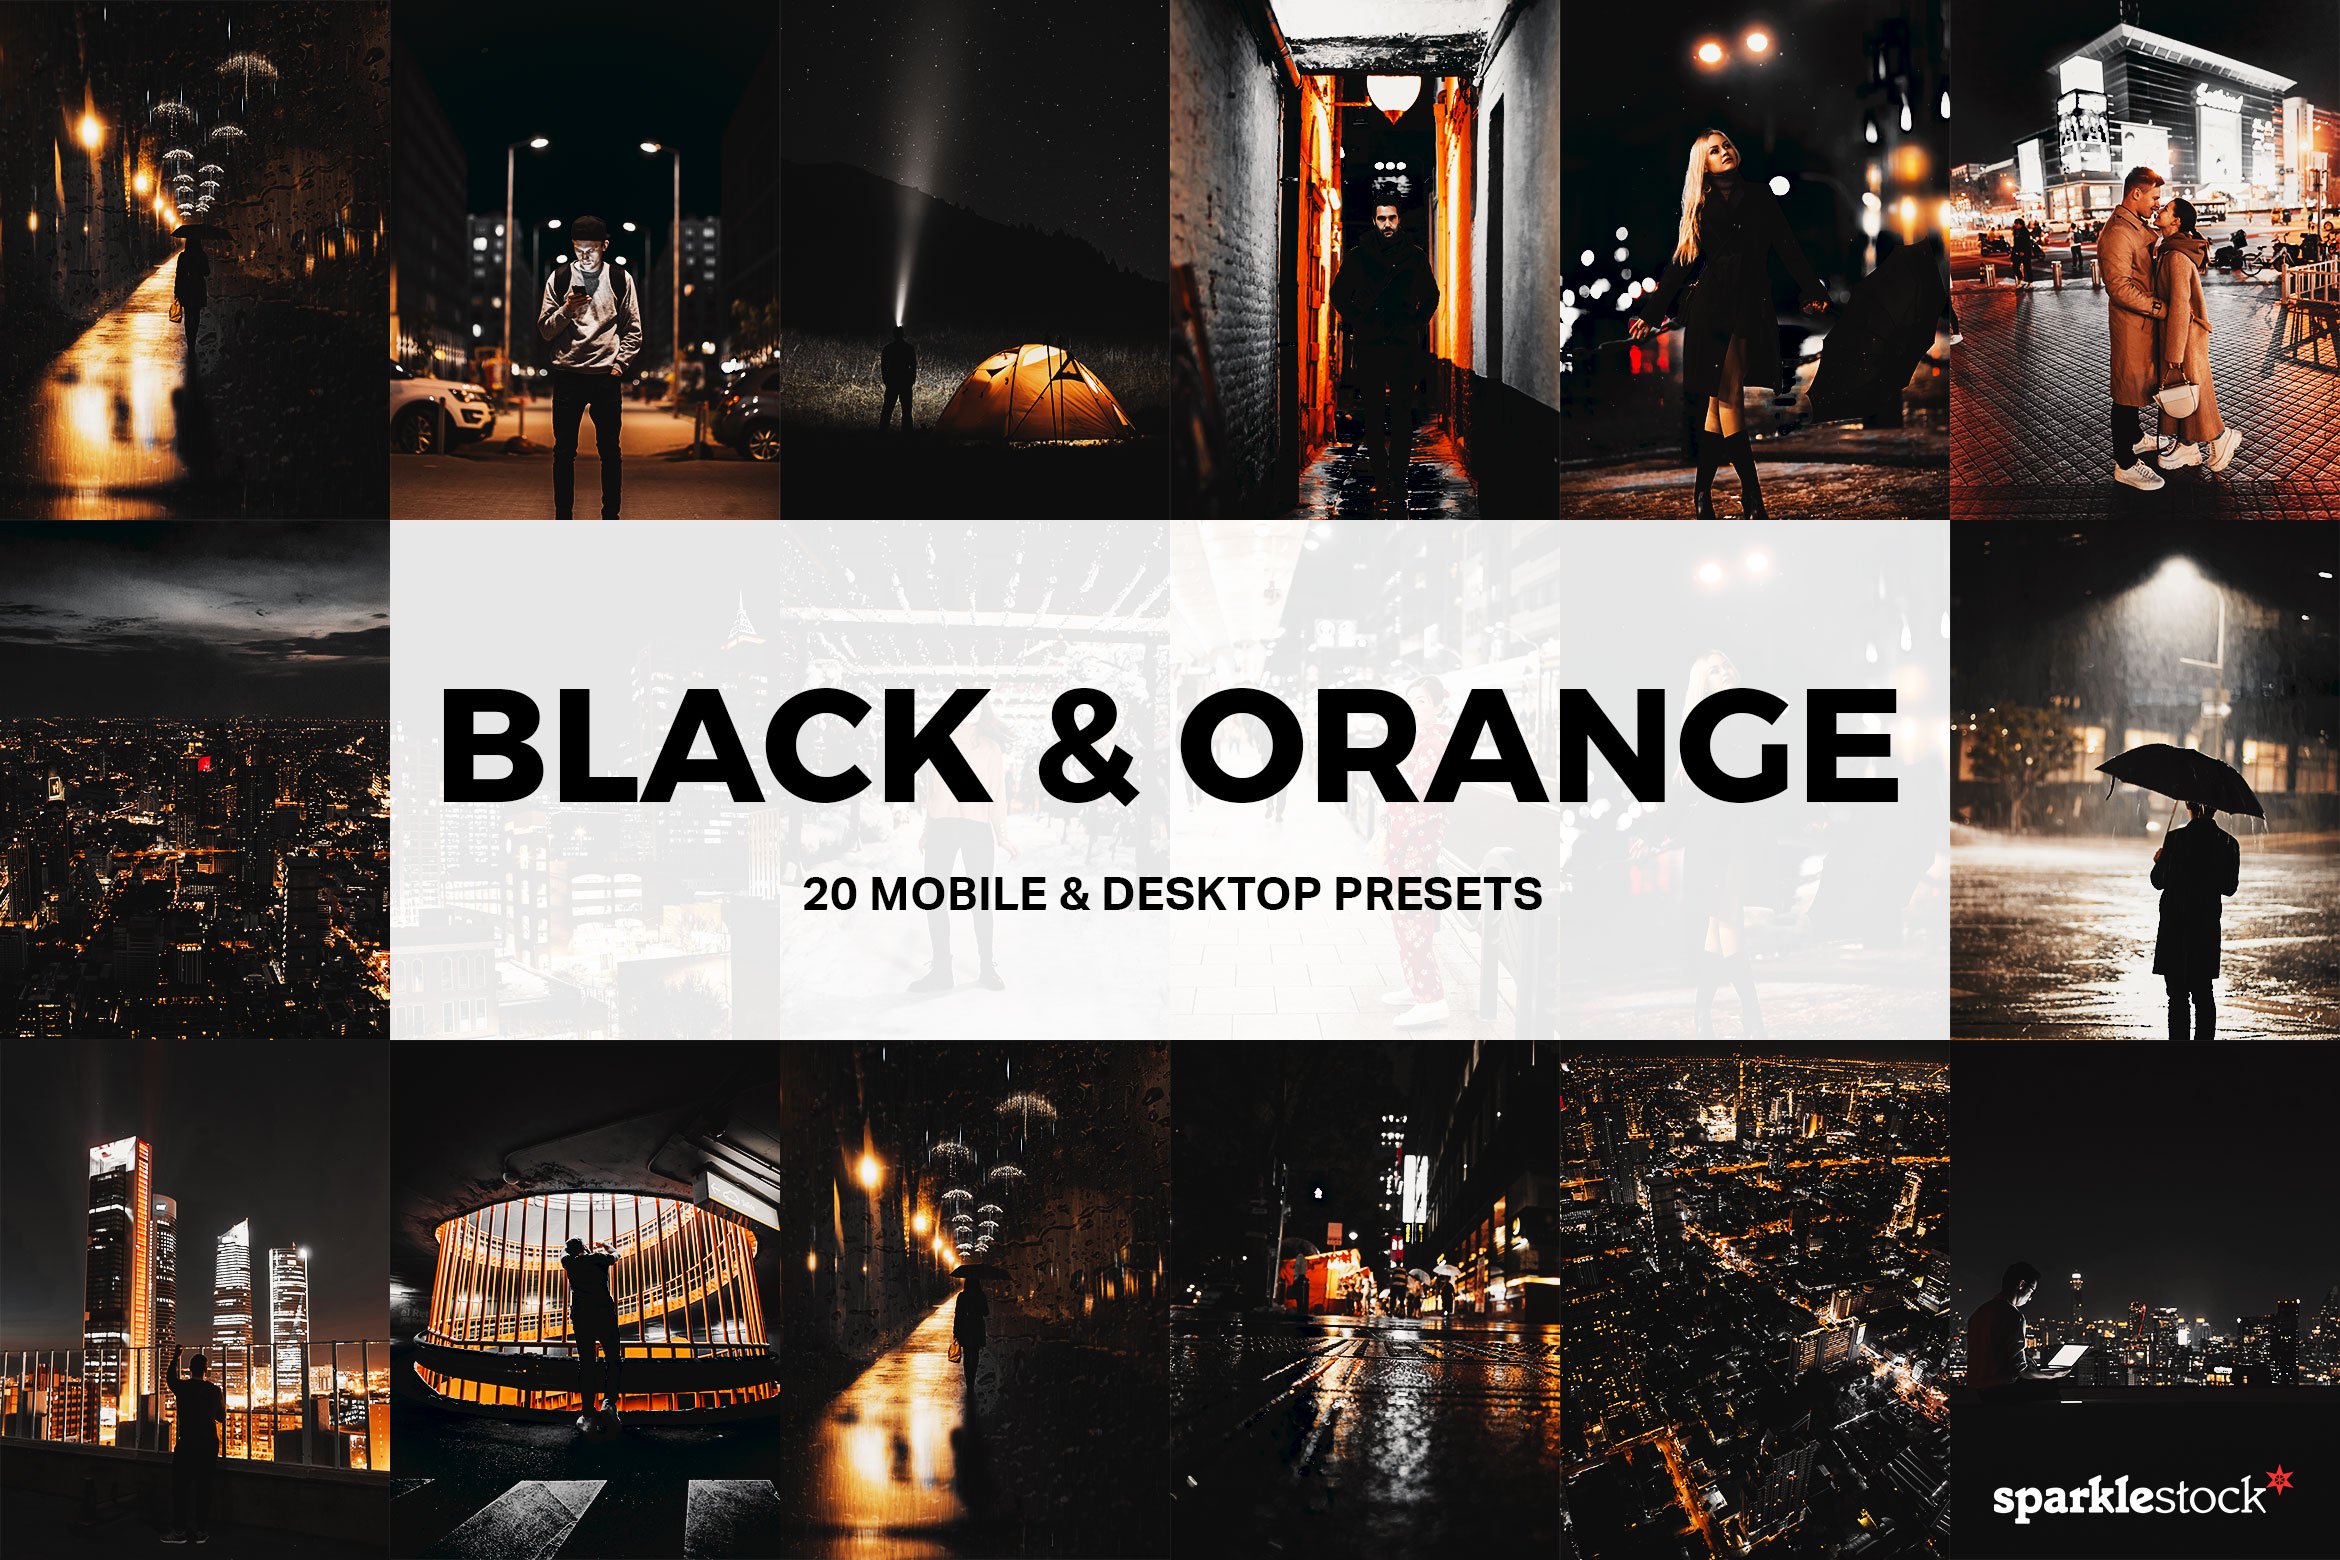 20 Black & Orange Lightroom Presetscover image.